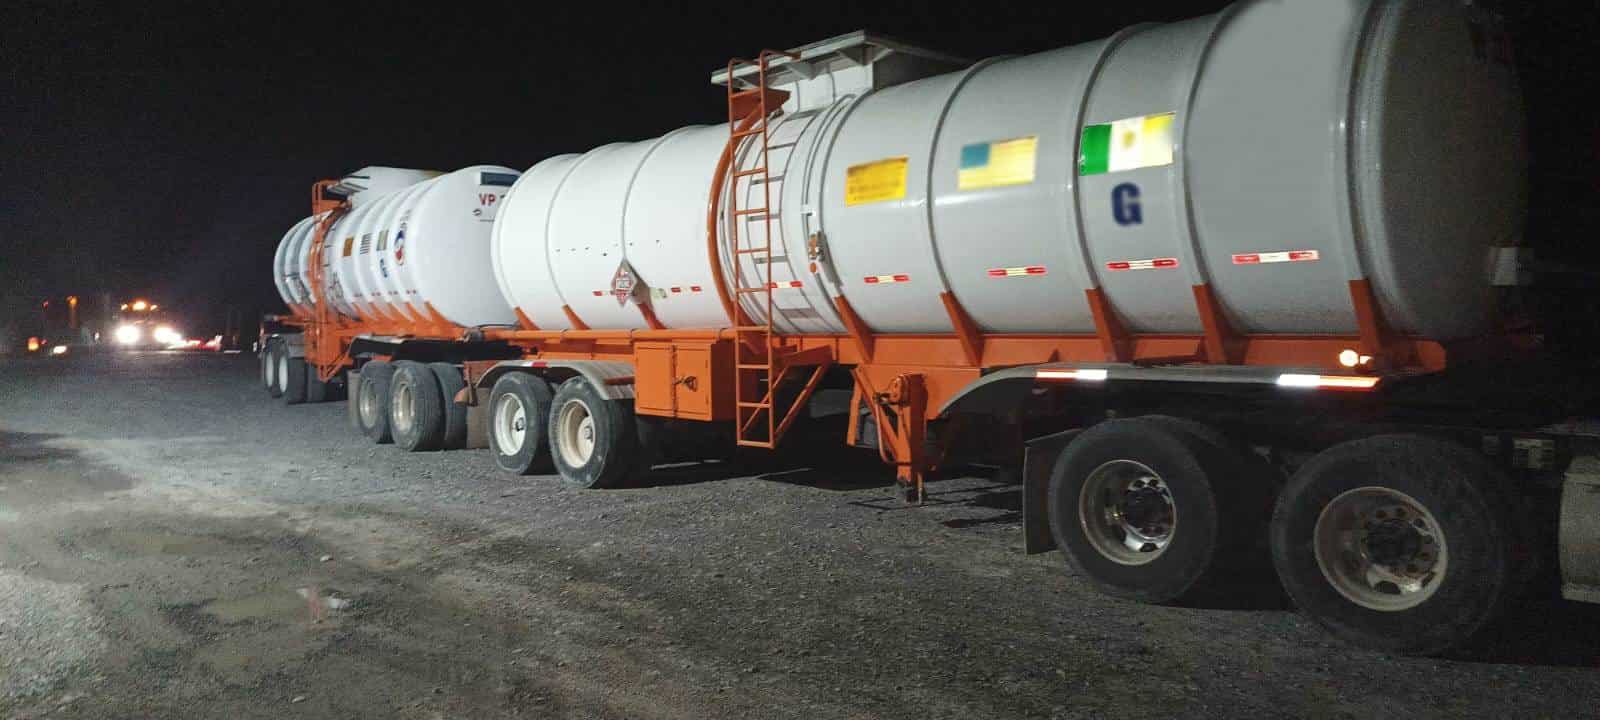 Elementos de la Guardia Nacional detuvieron en un puesto de control a un trailero que transportaba 62 mil litros de combustible presuntamente robado, en General Bravo